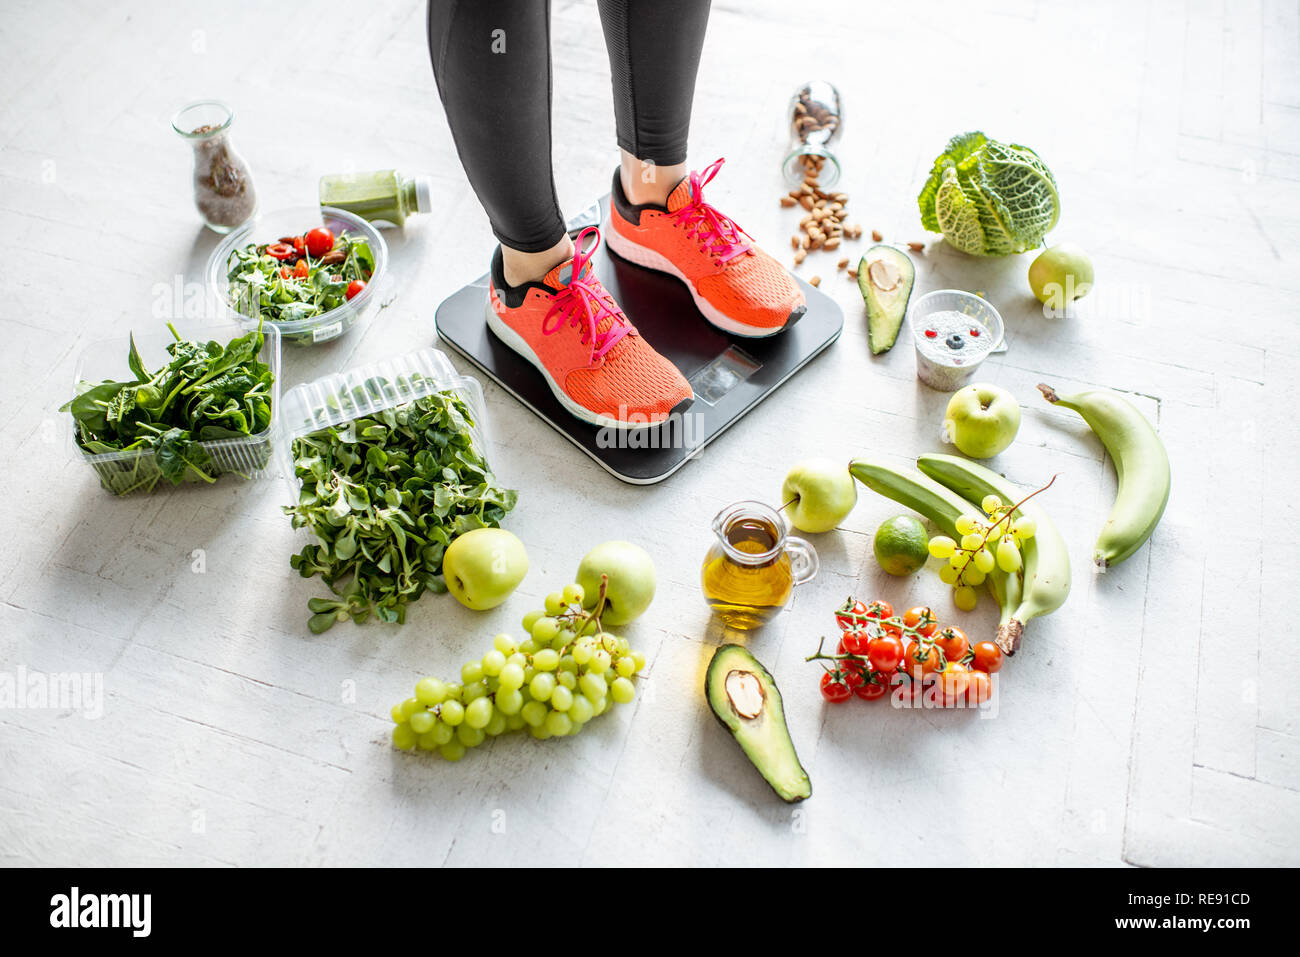 Sport Frau wiegen auf der Waage mit gesunden Lebensmitteln um.  Gewichtsverlust, gesundes Essen und Sport Lifestyle Konzept Stockfotografie  - Alamy